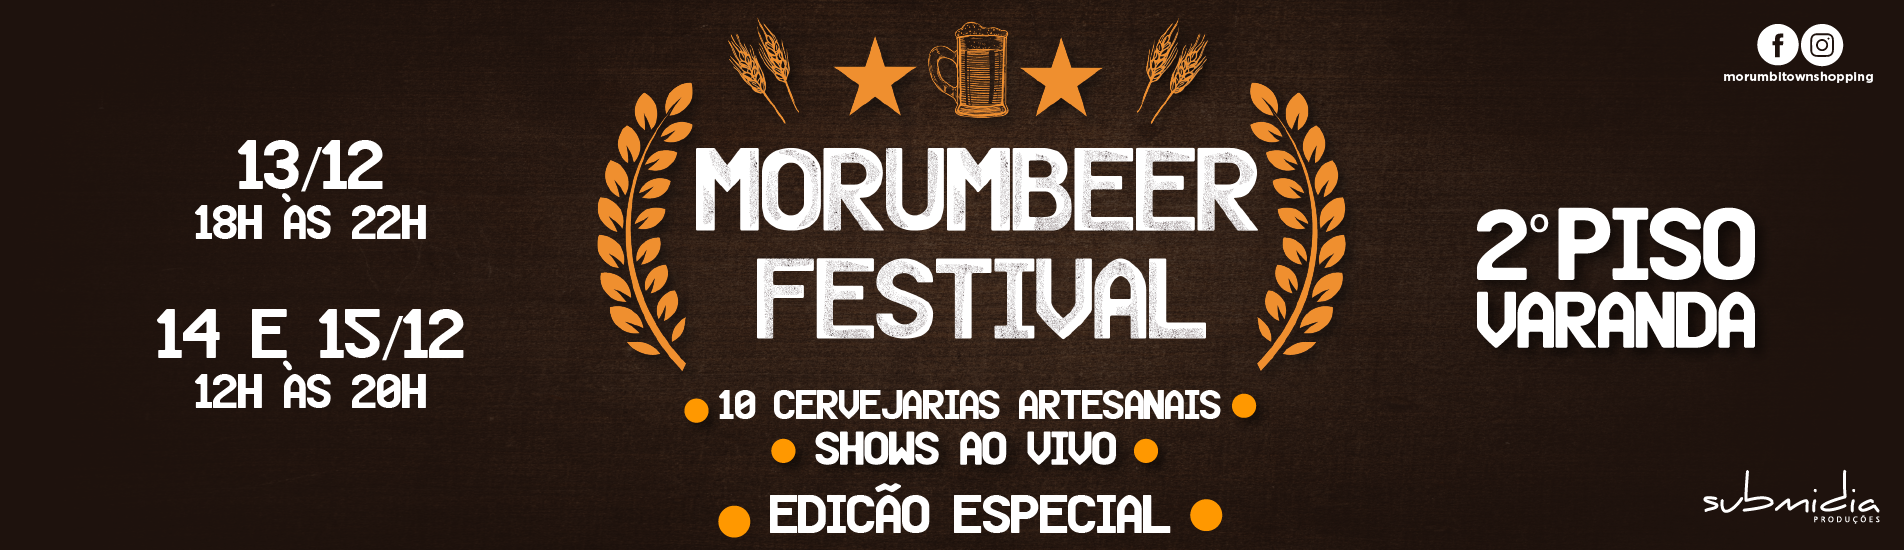 Morumbeer Festival - DEZEMBRO